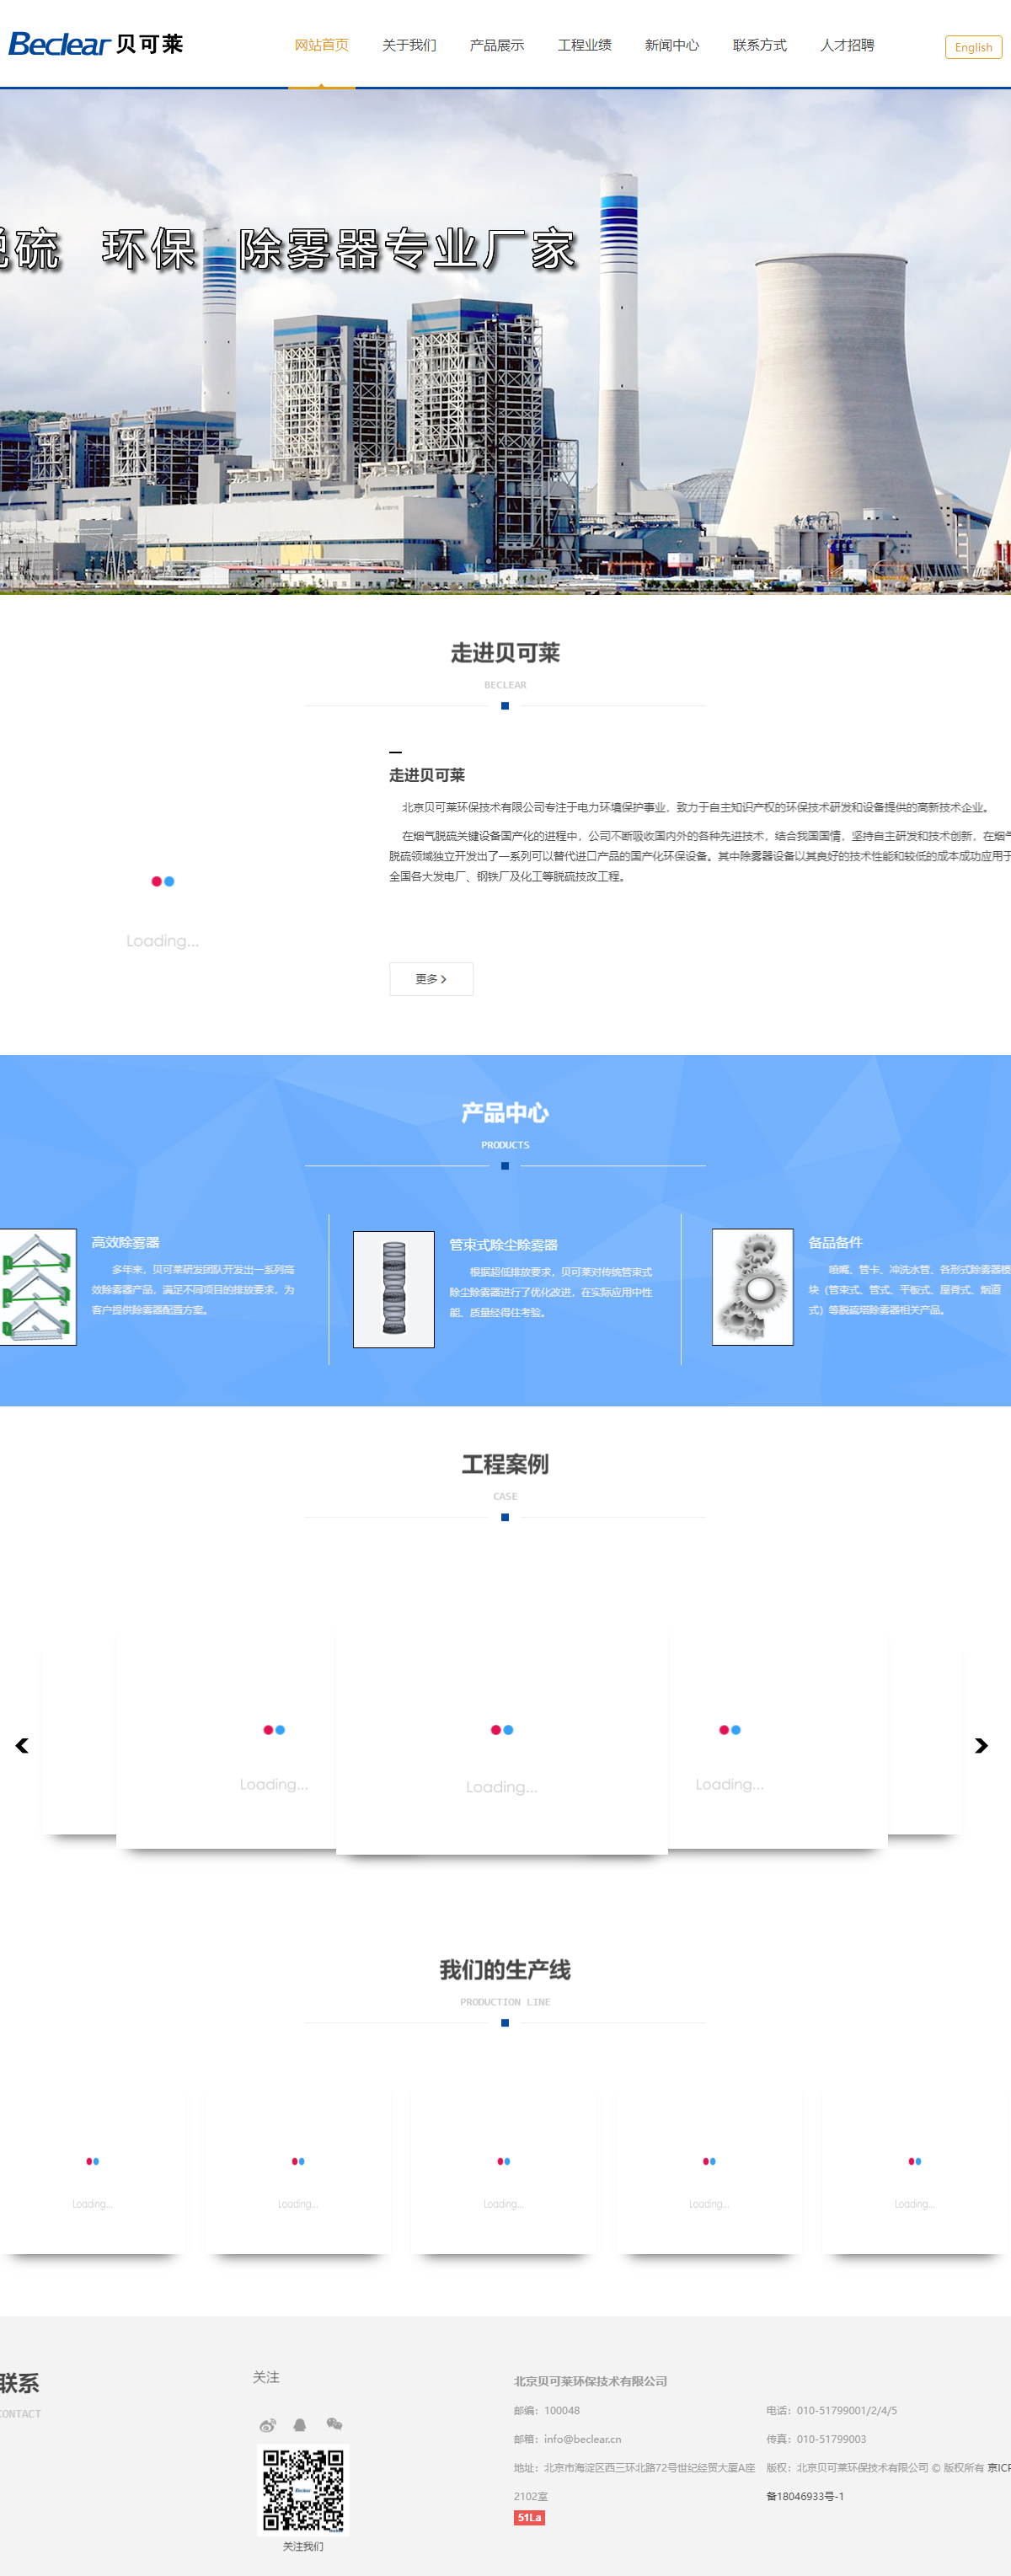 北京贝可莱环保技术有限公司网站案例